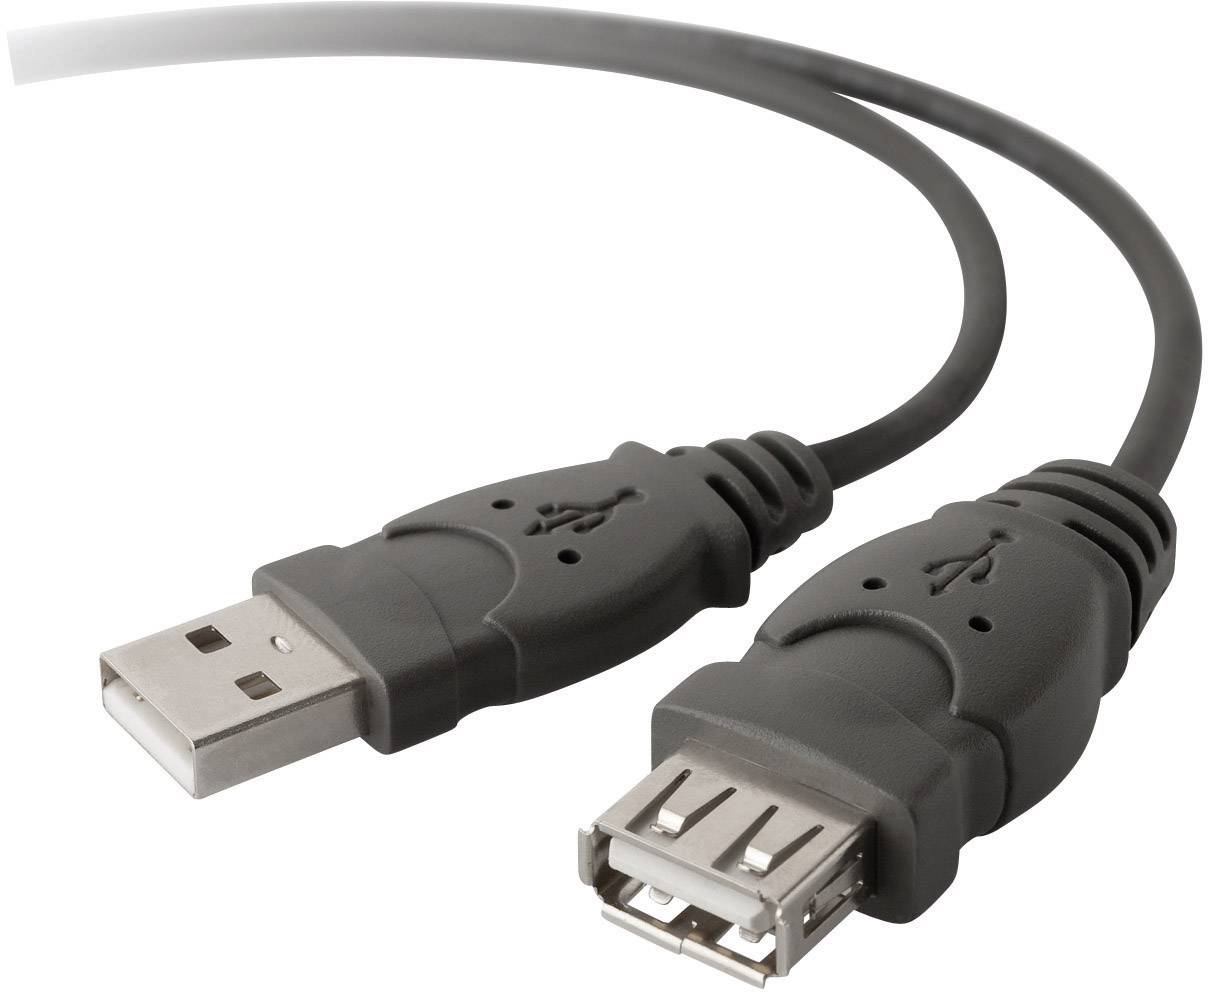 Migratie Pennenvriend tuberculose Belkin USB-kabel USB 2.0 USB-A stekker, USB-A bus 4.80 m Zwart UL  gecertificeerd F3U153BT4.8M kopen ? Conrad Electronic